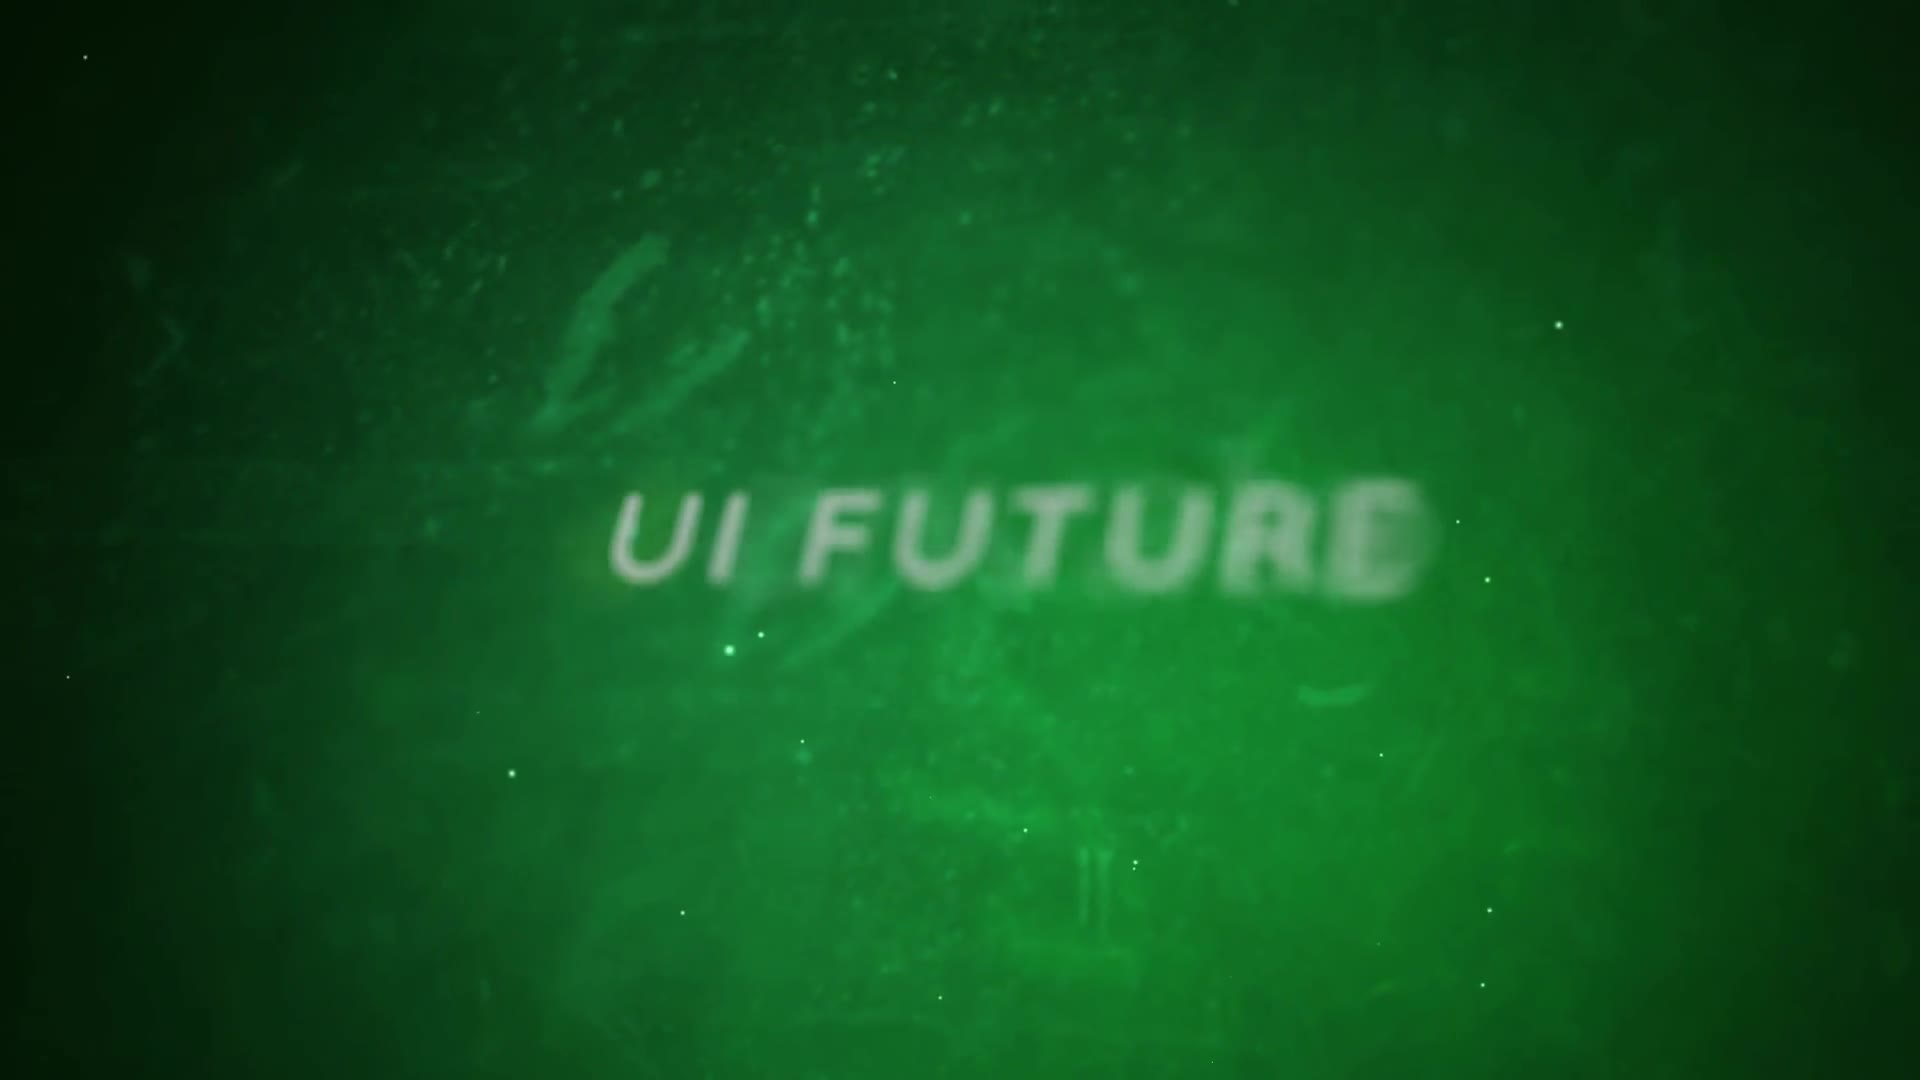 UI Future - Download Videohive 20418173